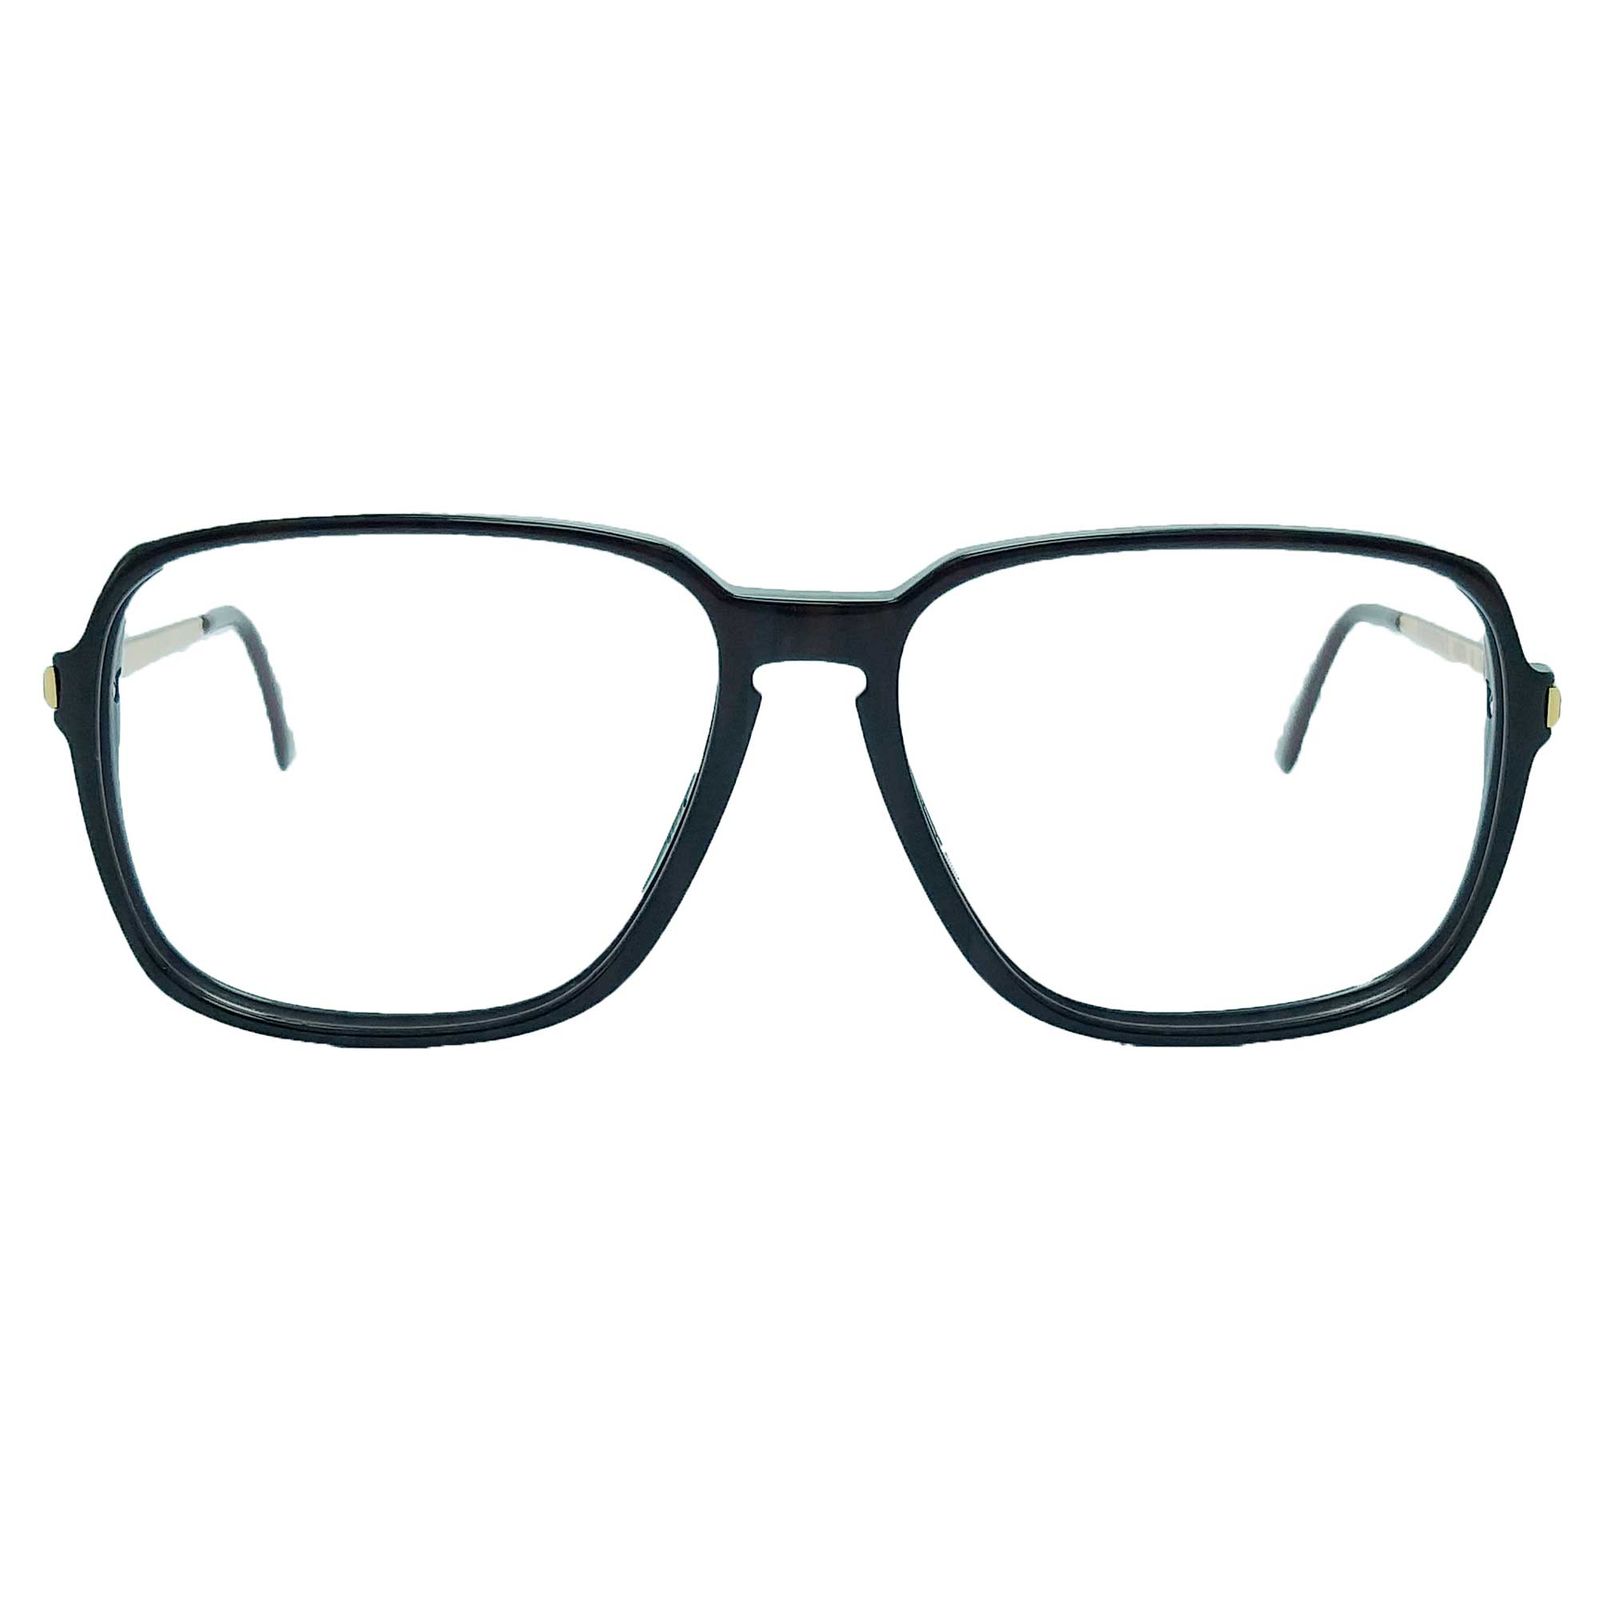 فریم عینک طبی مردانه رودن اشتوک مدل R0979 -  - 1